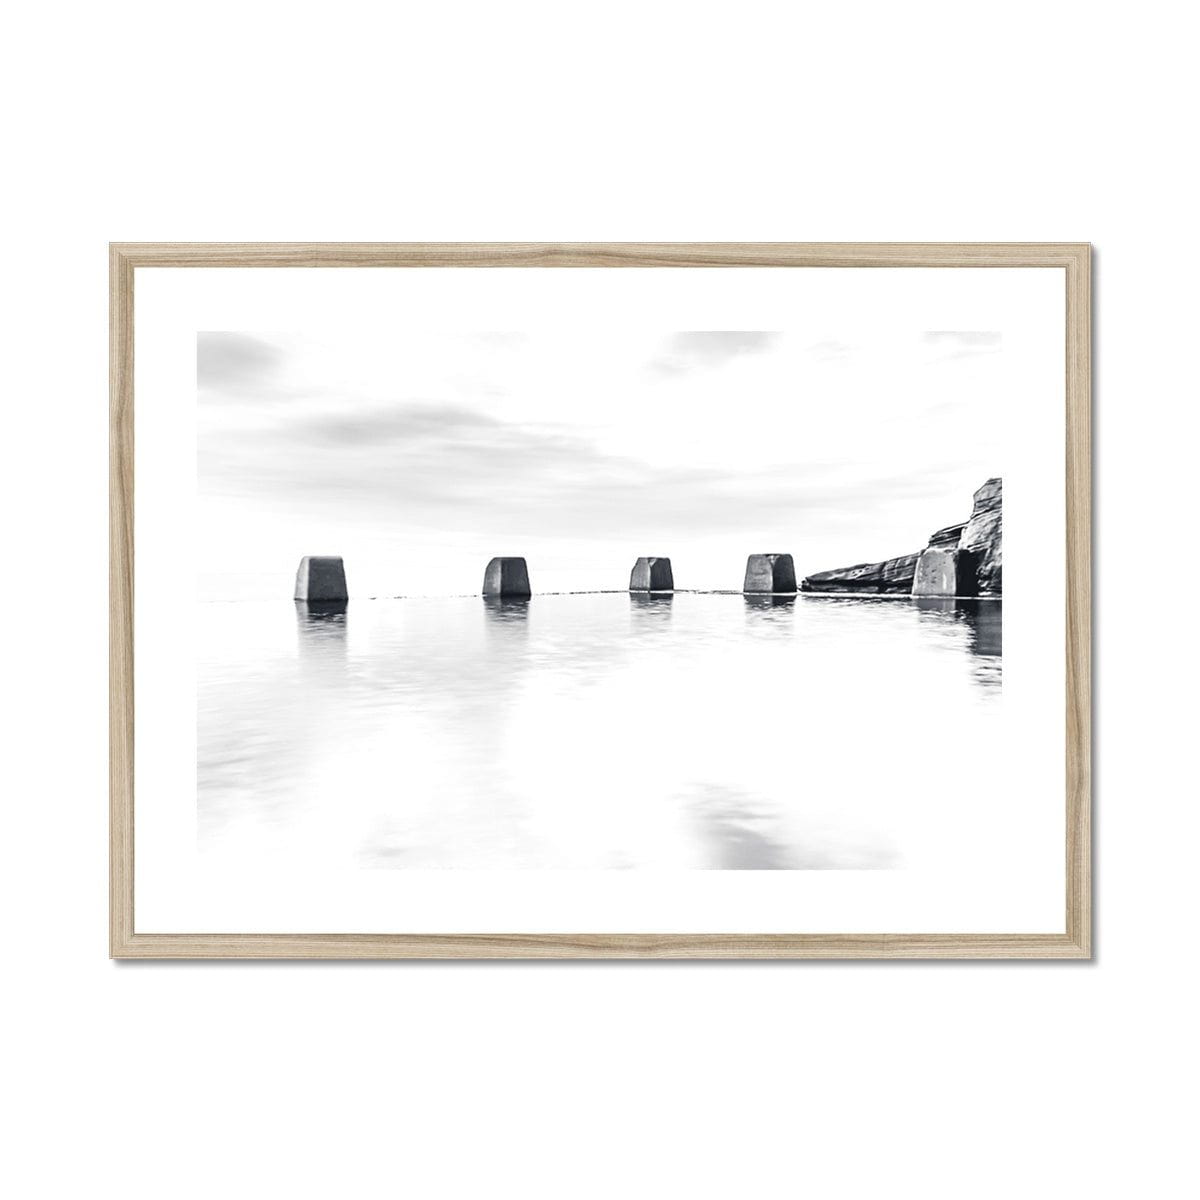 Adam Davies Framed 28"x20" / Natural Frame Black & White Pool Blocks Framed & Mounted Print